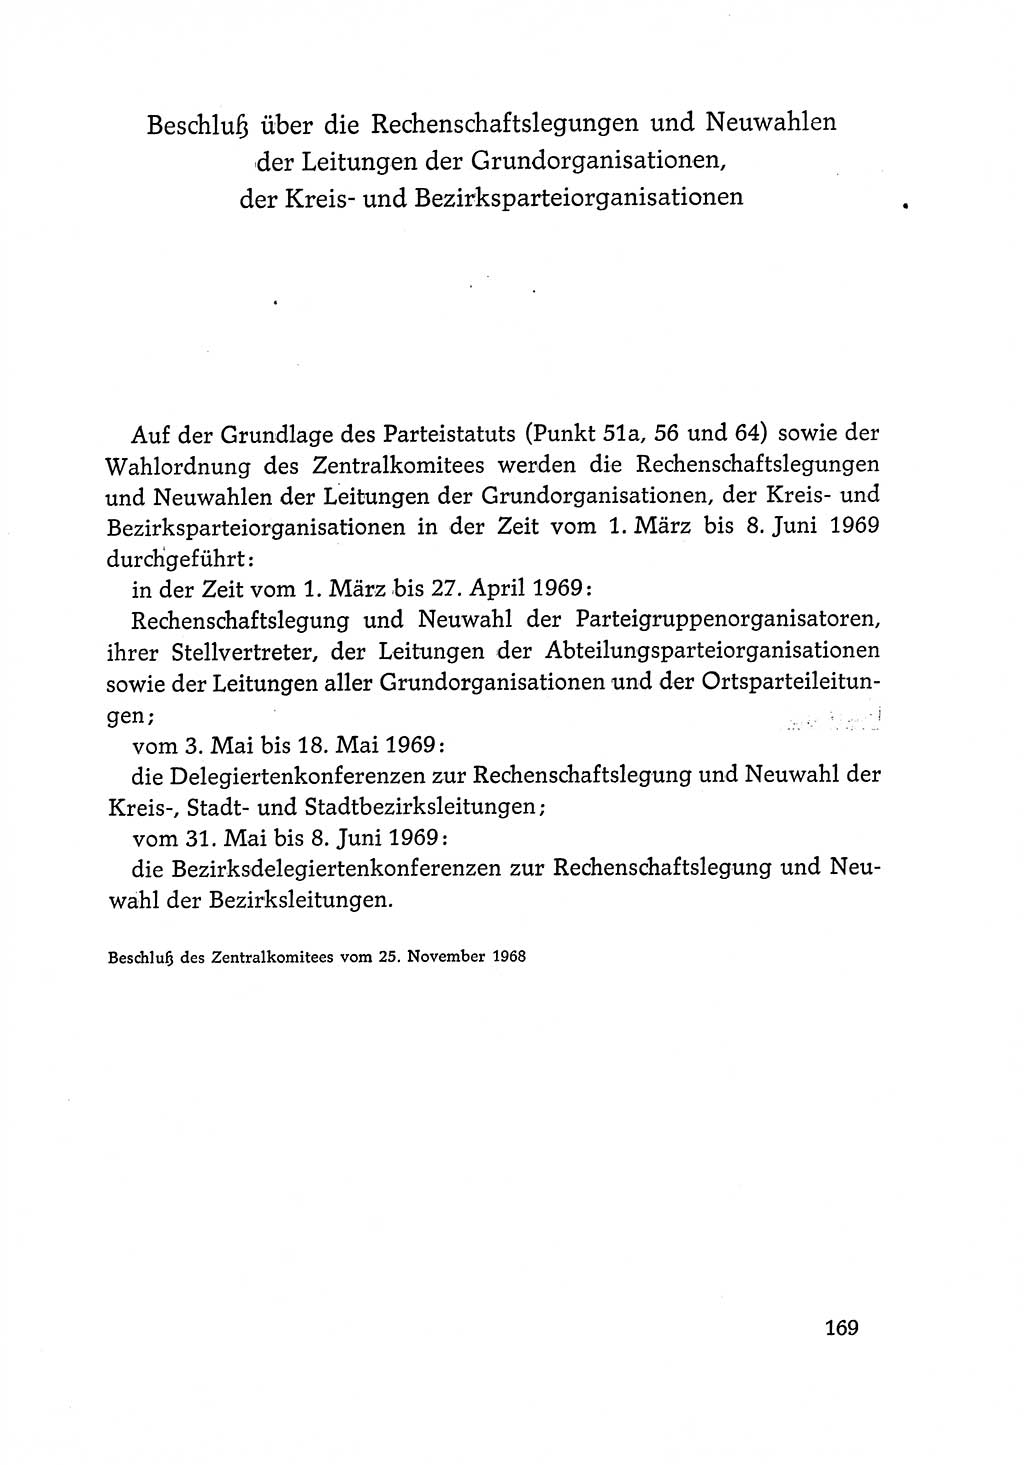 Dokumente der Sozialistischen Einheitspartei Deutschlands (SED) [Deutsche Demokratische Republik (DDR)] 1968-1969, Seite 169 (Dok. SED DDR 1968-1969, S. 169)